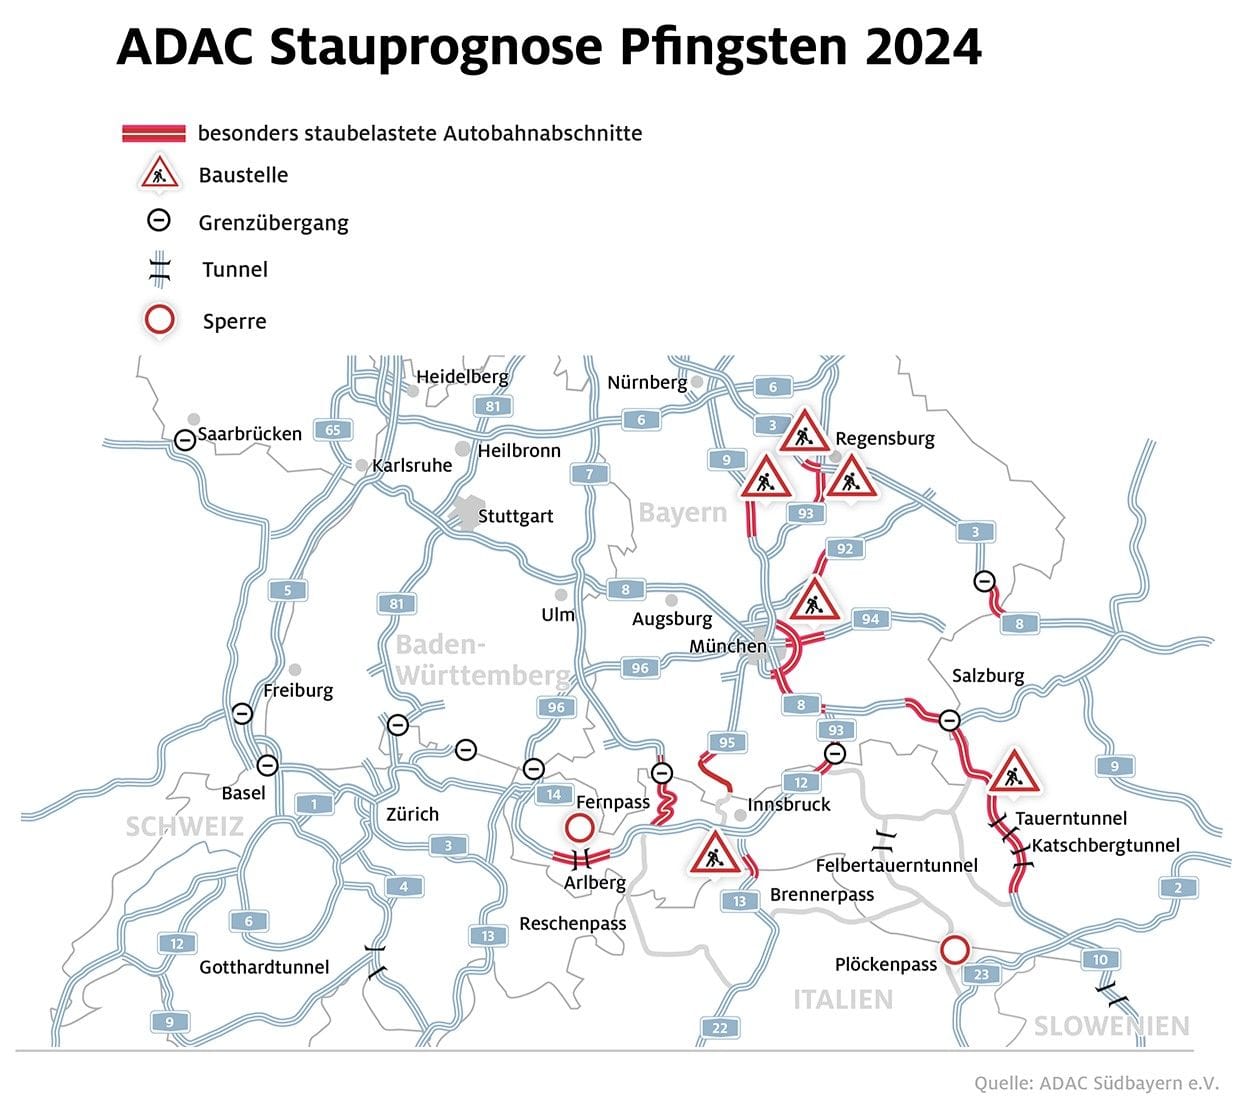 Auf den markierten Autobahnen ist laut dem ADAC an Pfingsten das Staurisiko am größten.